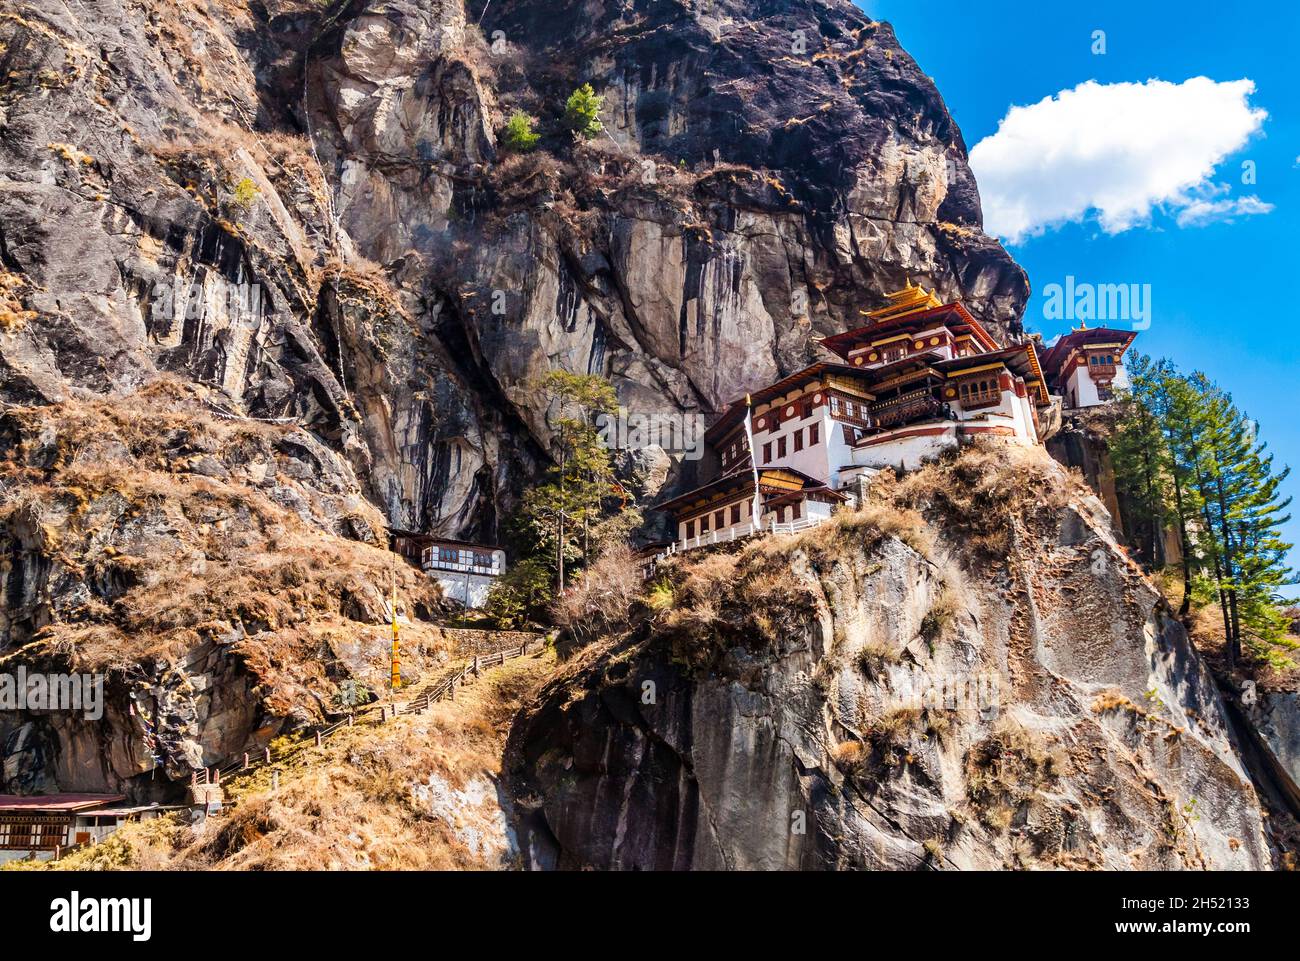 Taktshang Goemba, Taktsang Palphug Kloster oder Tiger's Nest Kloster, das berühmteste Kloster in Bhutan, in einer Bergklippe im Paro Tal. Anzeigen Stockfoto